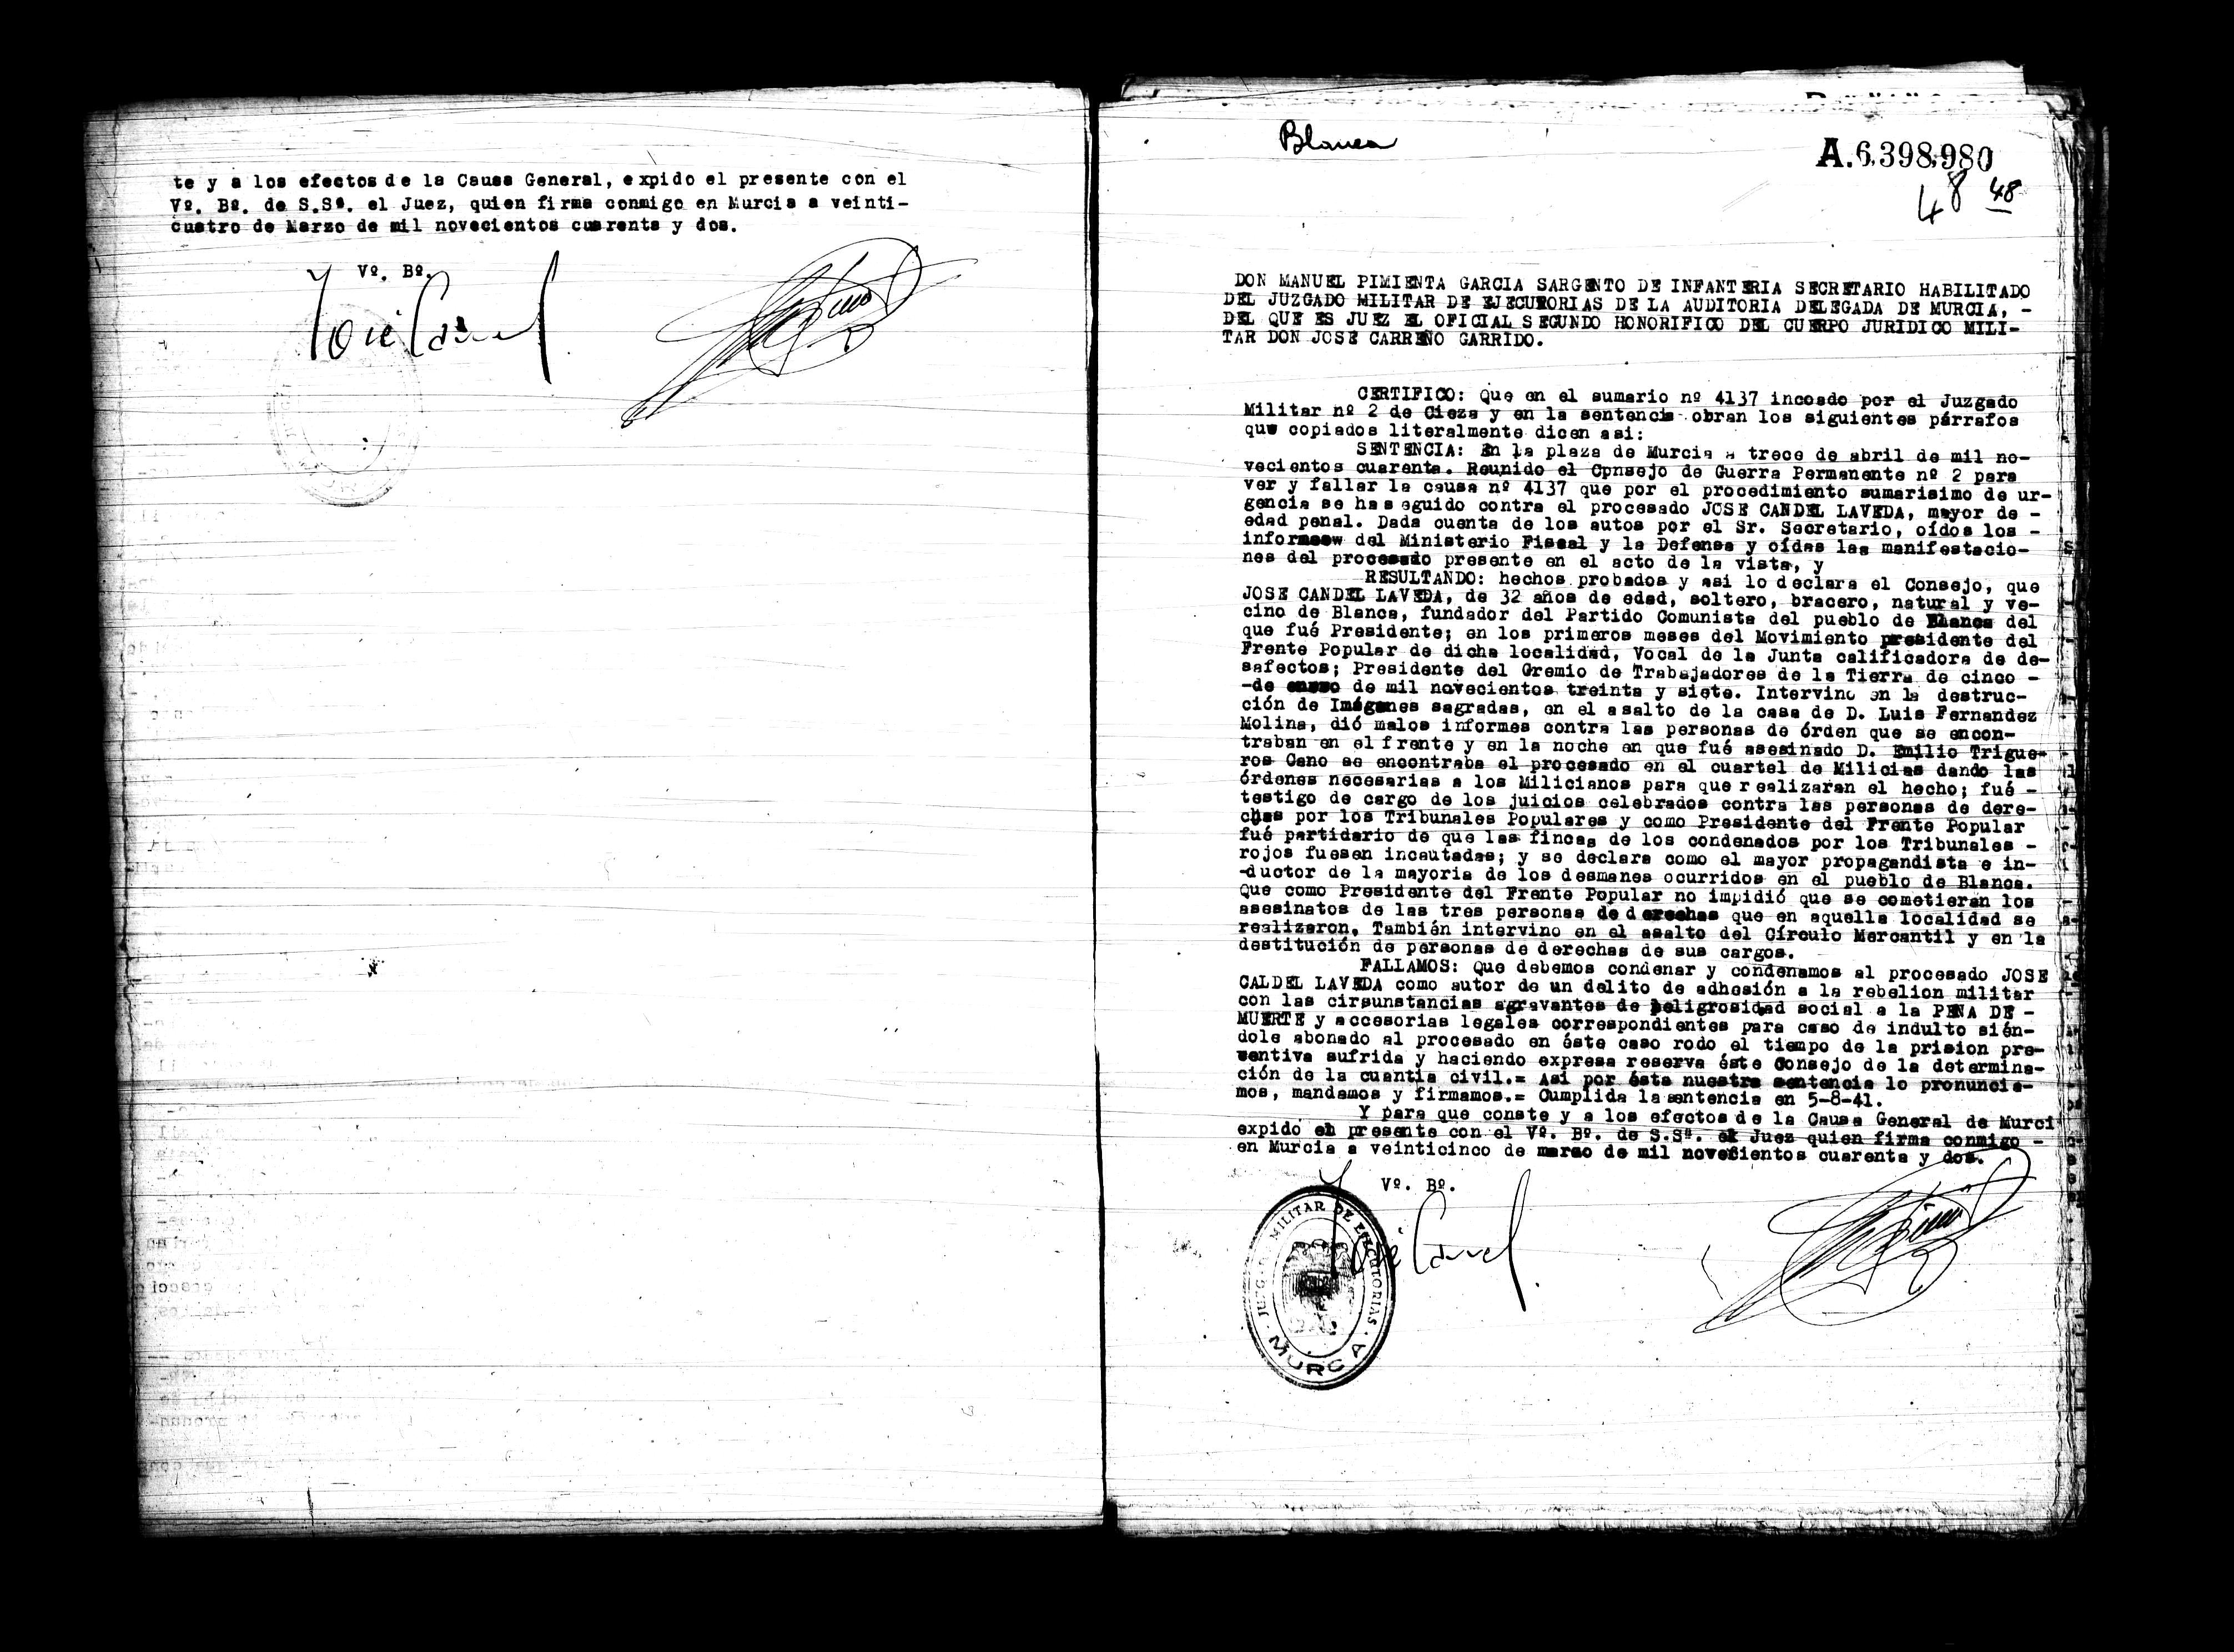 Certificado de la sentencia pronunciada contra José Candel Laveda, causa  4137, el 13 de abril de 1940 en Murcia.